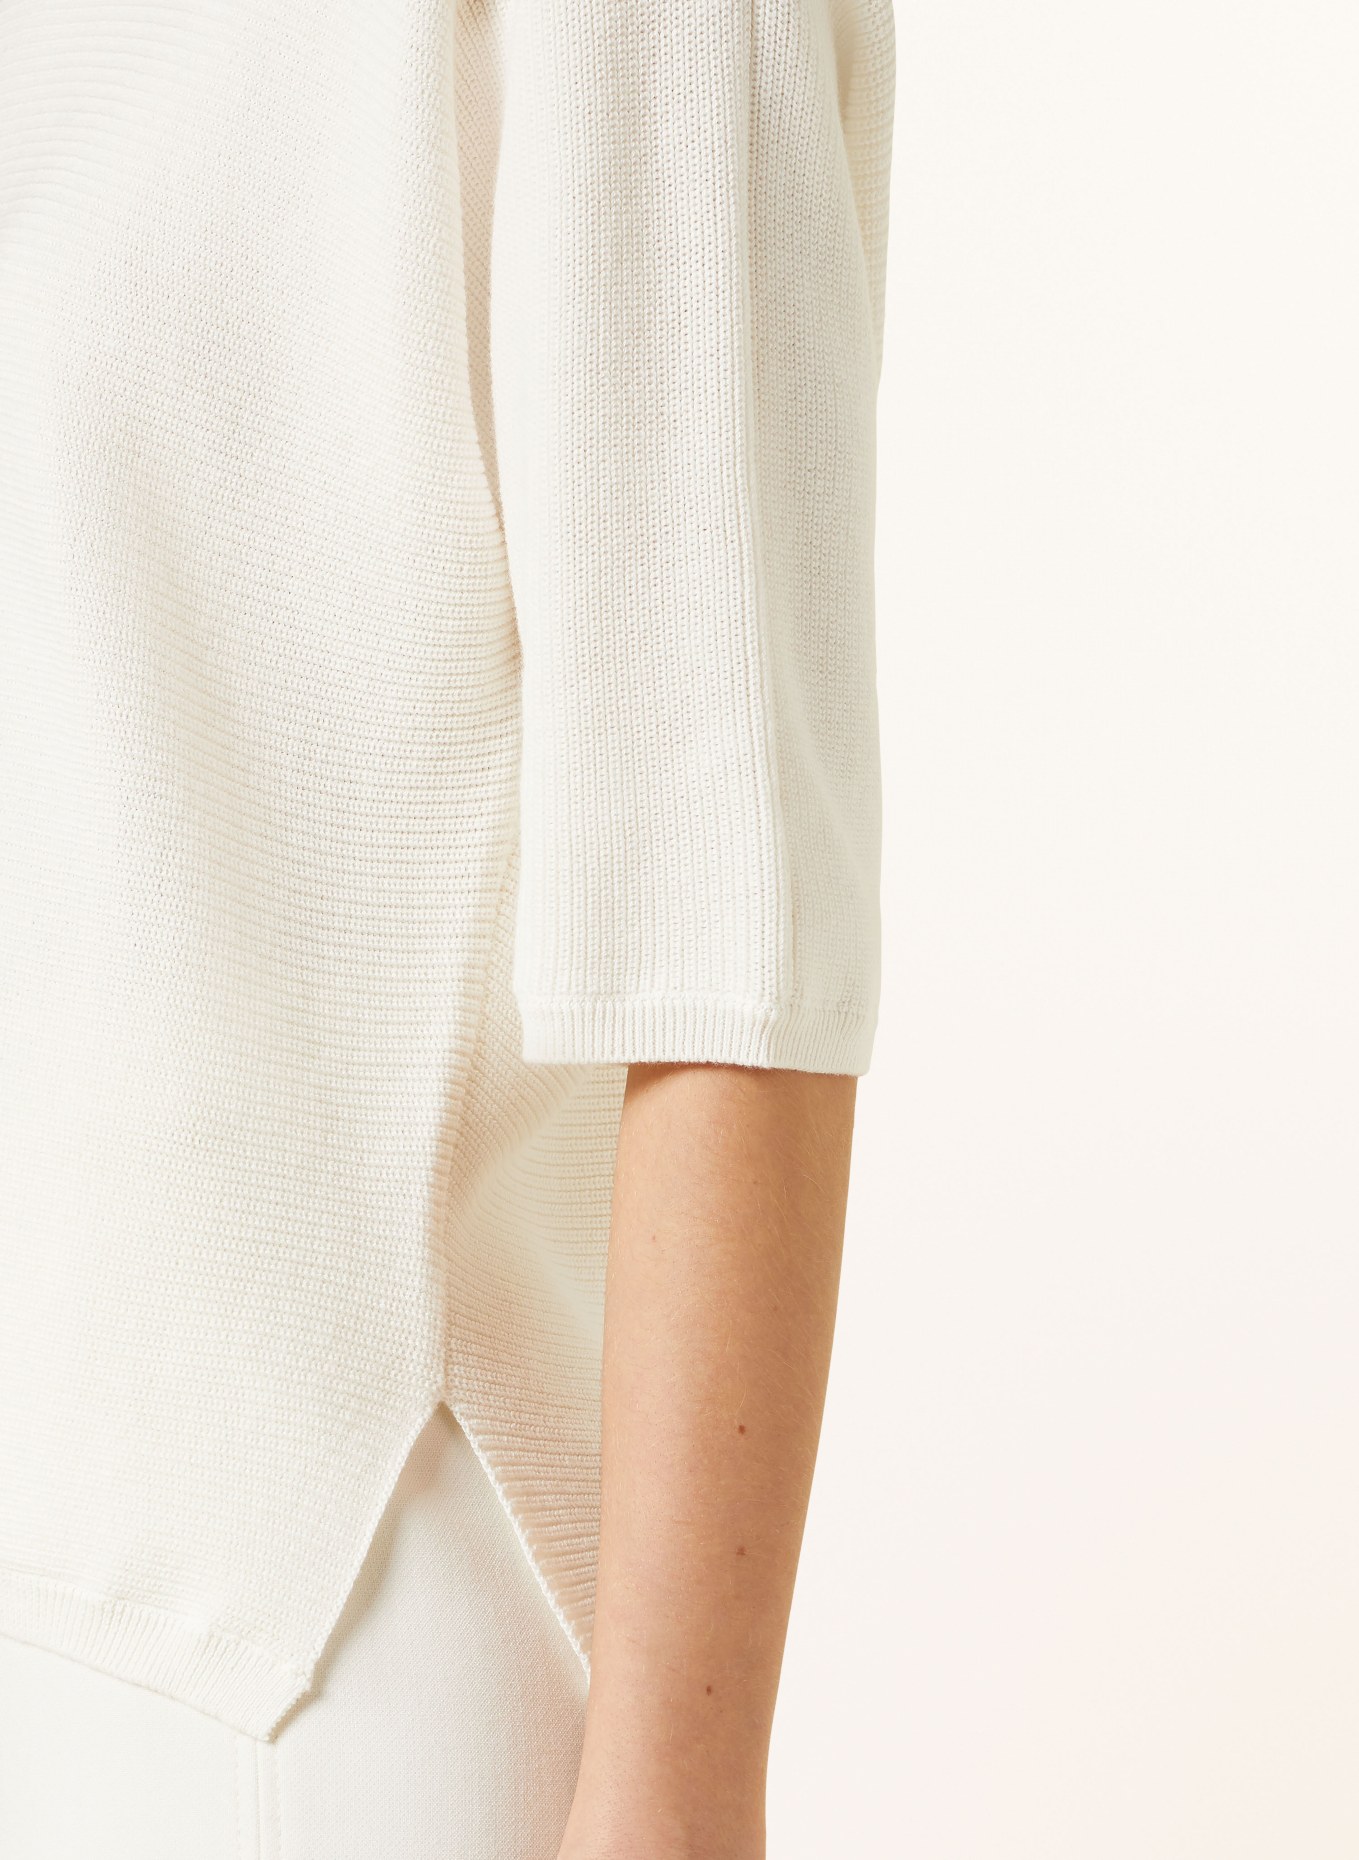 HEMISPHERE Pullover mit 3/4-Arm, Farbe: 1001 white weiss (Bild 4)